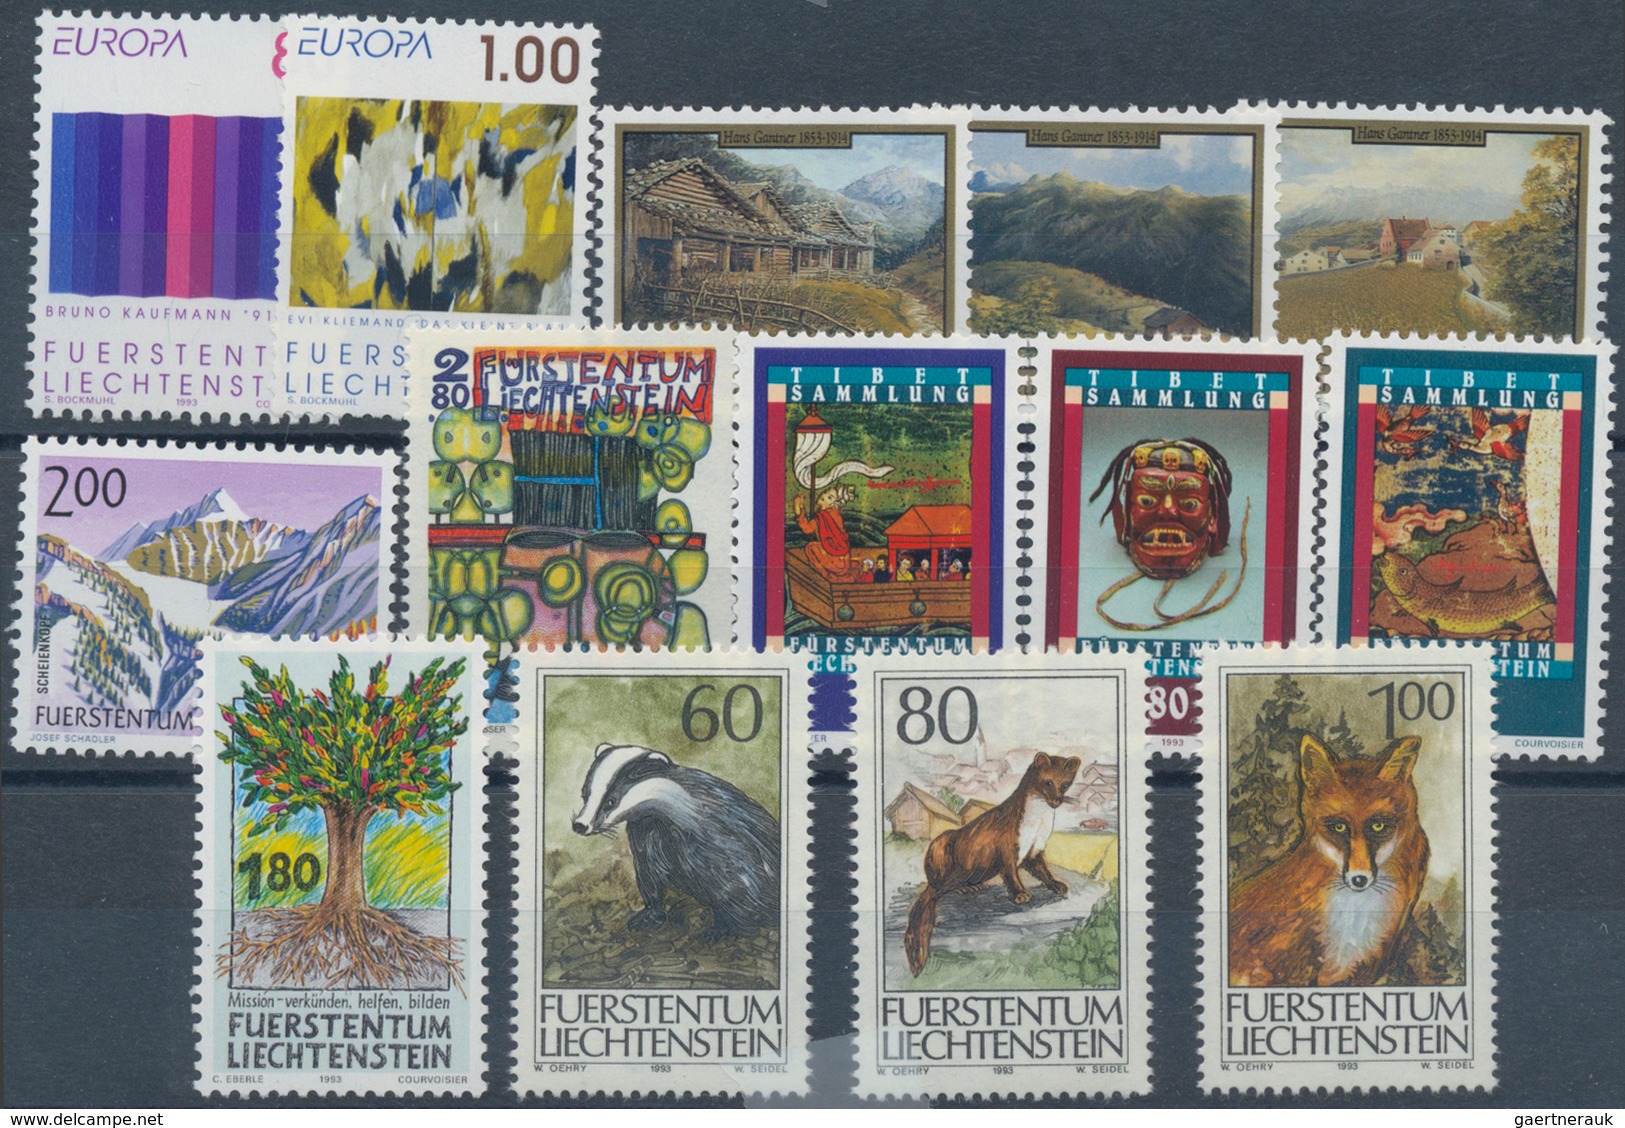 Liechtenstein: 1970/1995, Händerbestand mit Jahrgängen auf Steckkarten, per 25 eingeschweißt, ohne B